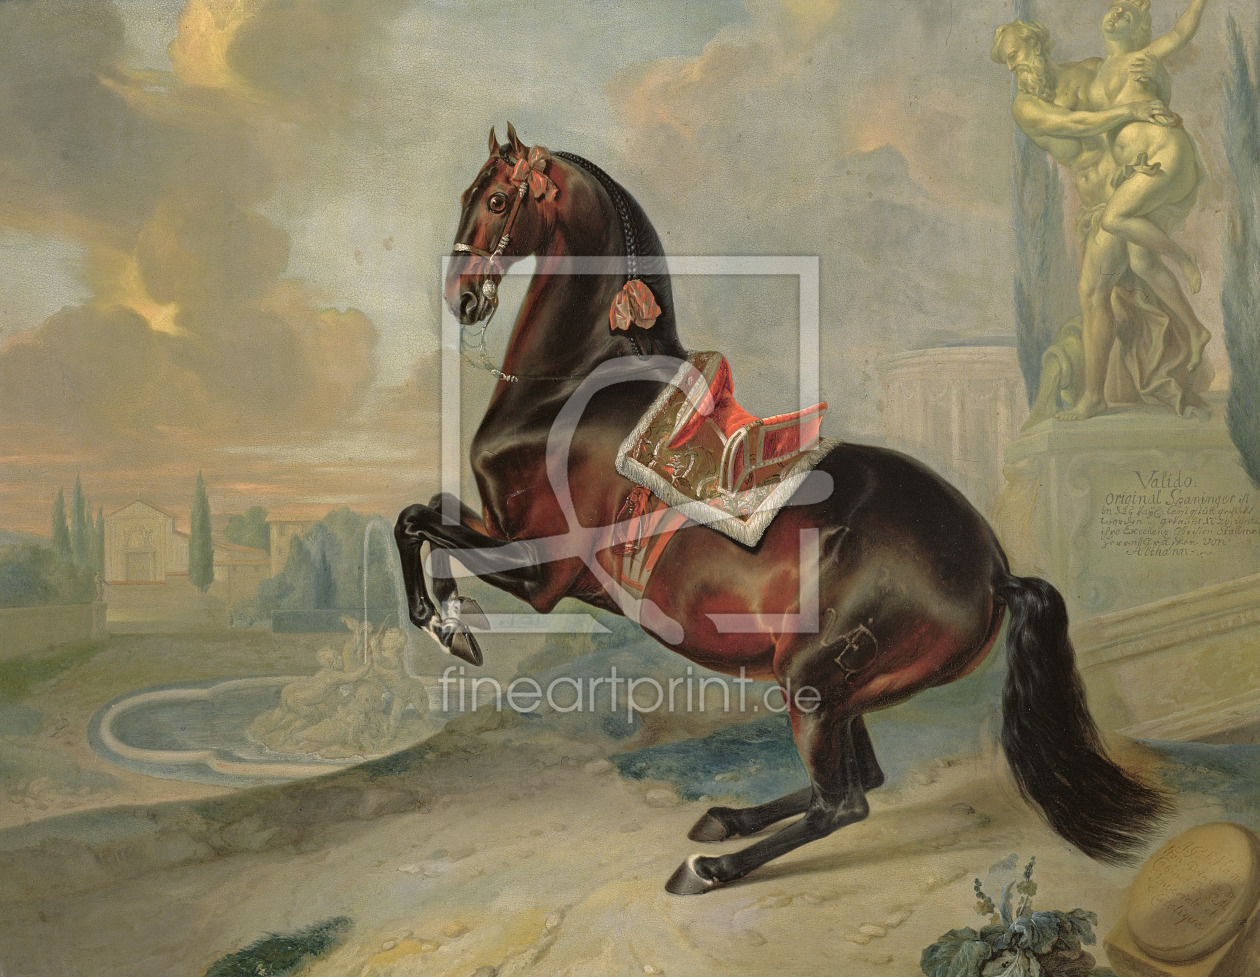 Bild-Nr.: 31001723 The dark bay horse 'Valido' performing a Levade movement erstellt von Hamilton, Johann Georg